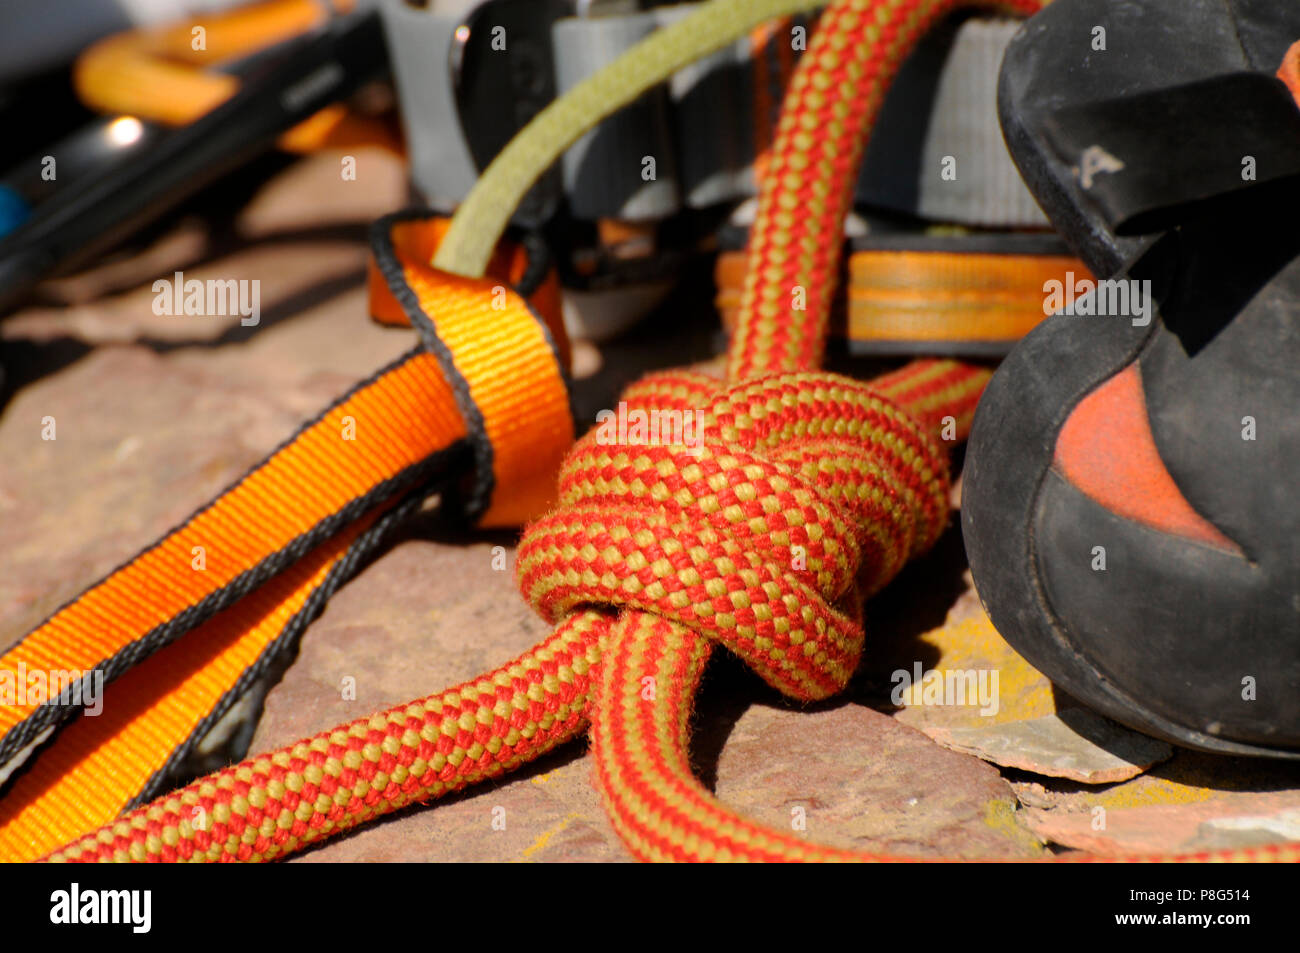 Matériel d'alpinisme, escalade, alpinisme, escalade, sangles, figure en huit noeud, chaussures du grimpeur Banque D'Images